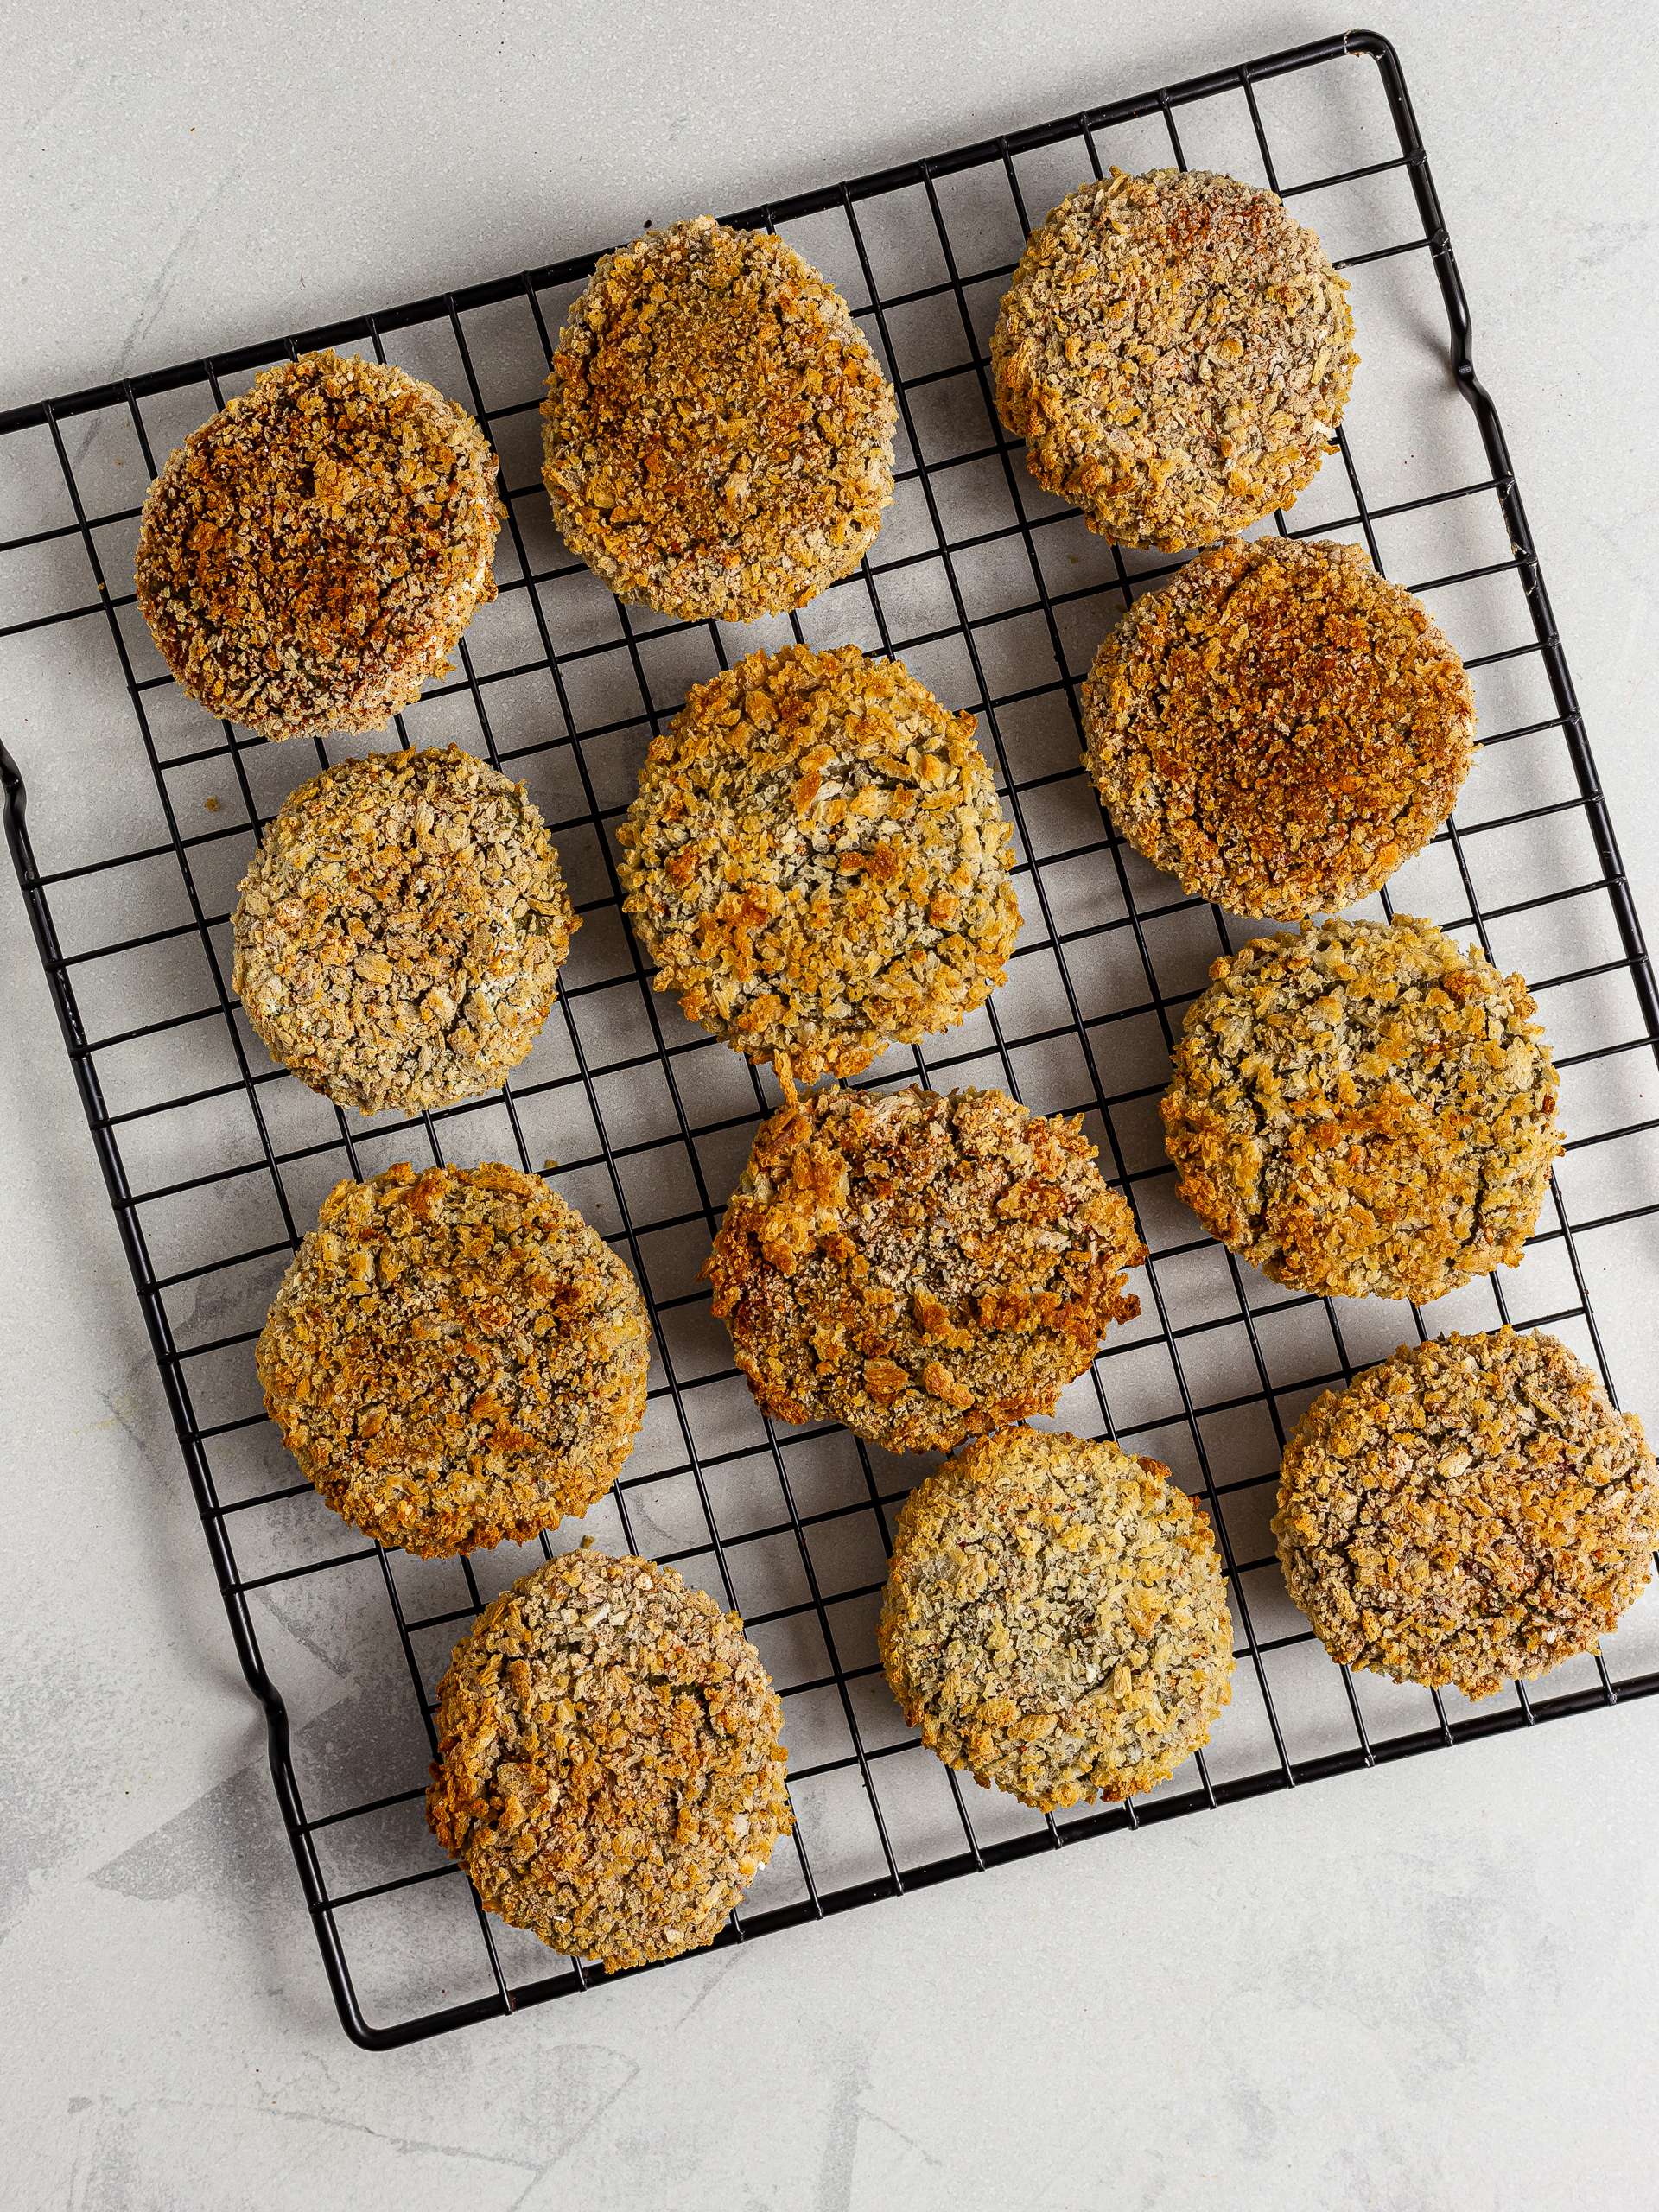 Oven-baked lentil nuggets